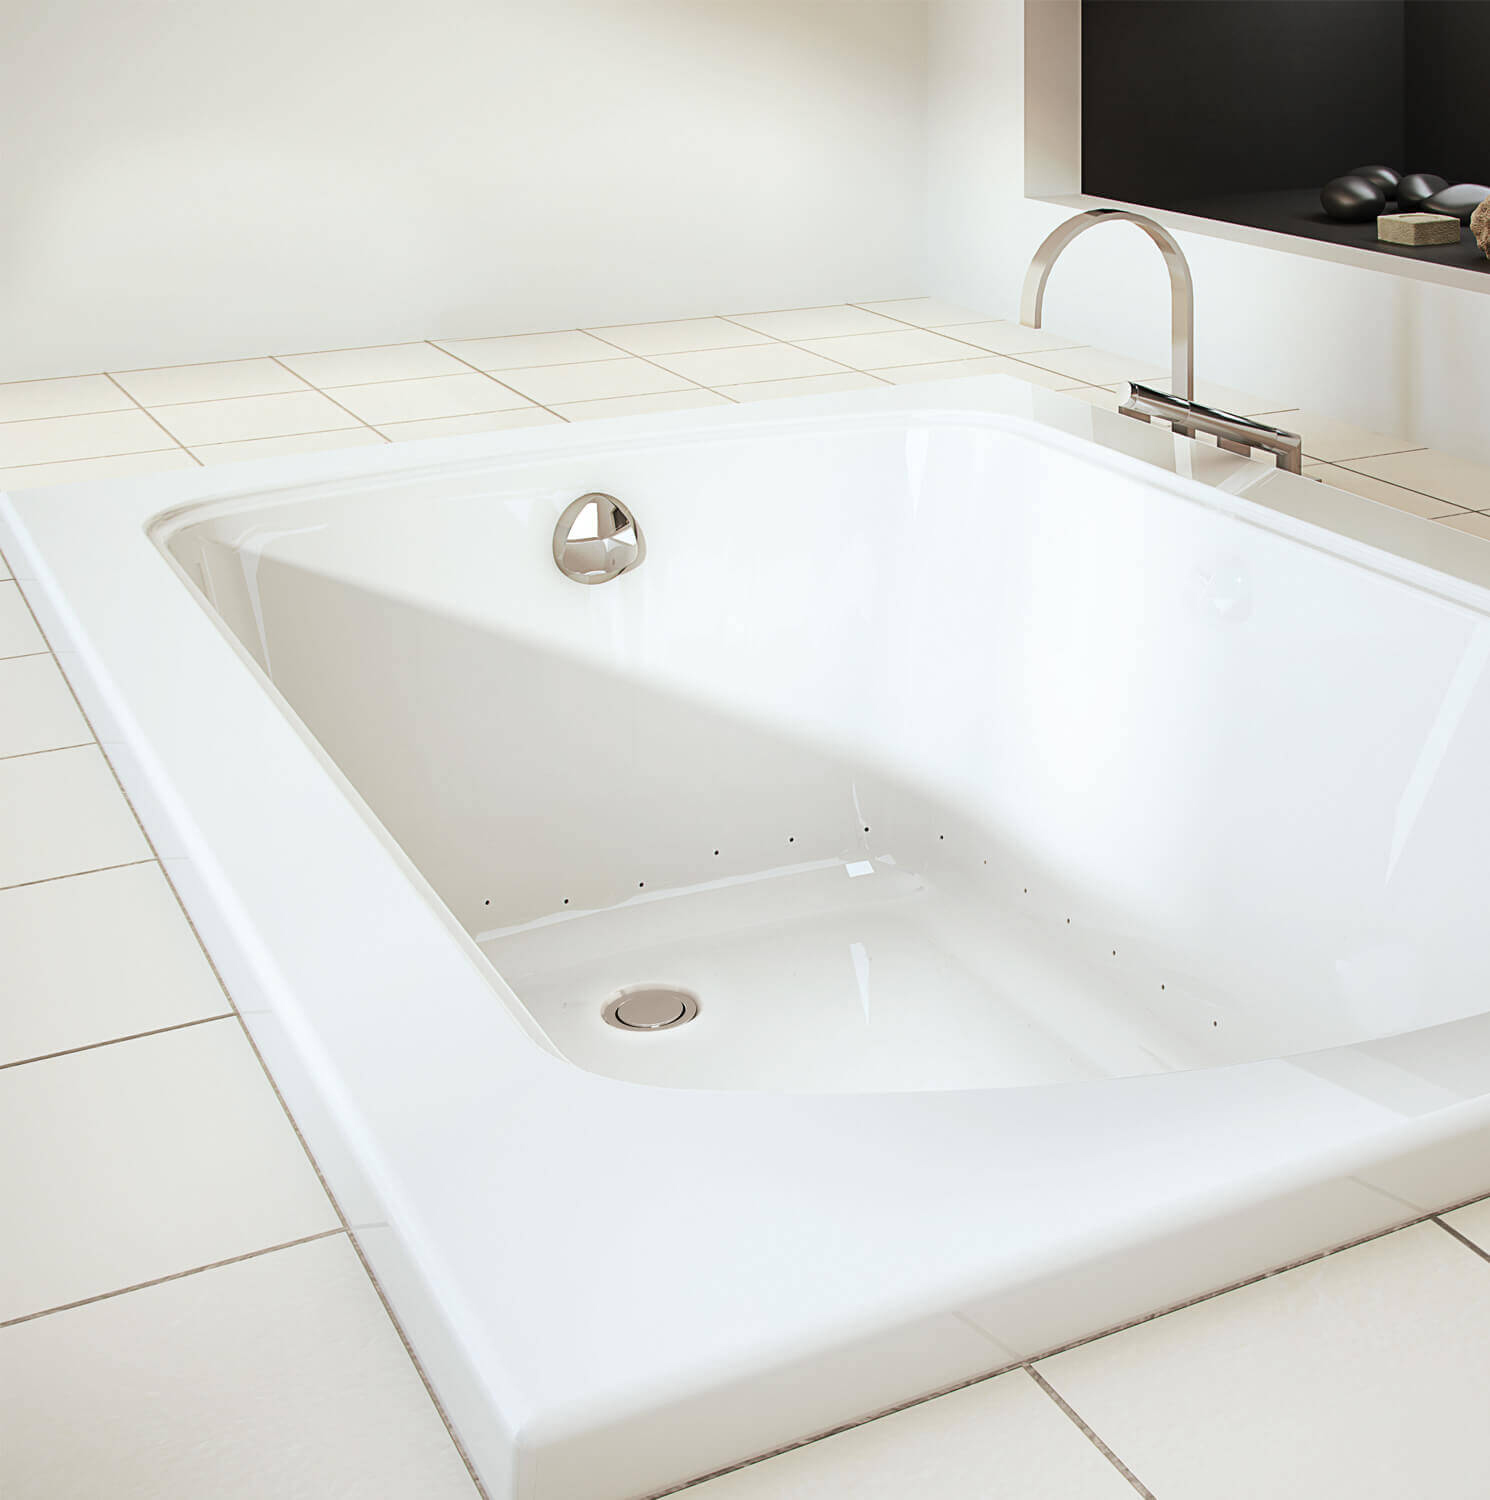 Bainultra Meridian® 6032 alcove drop-in air jet bathtub for your modern bathroom